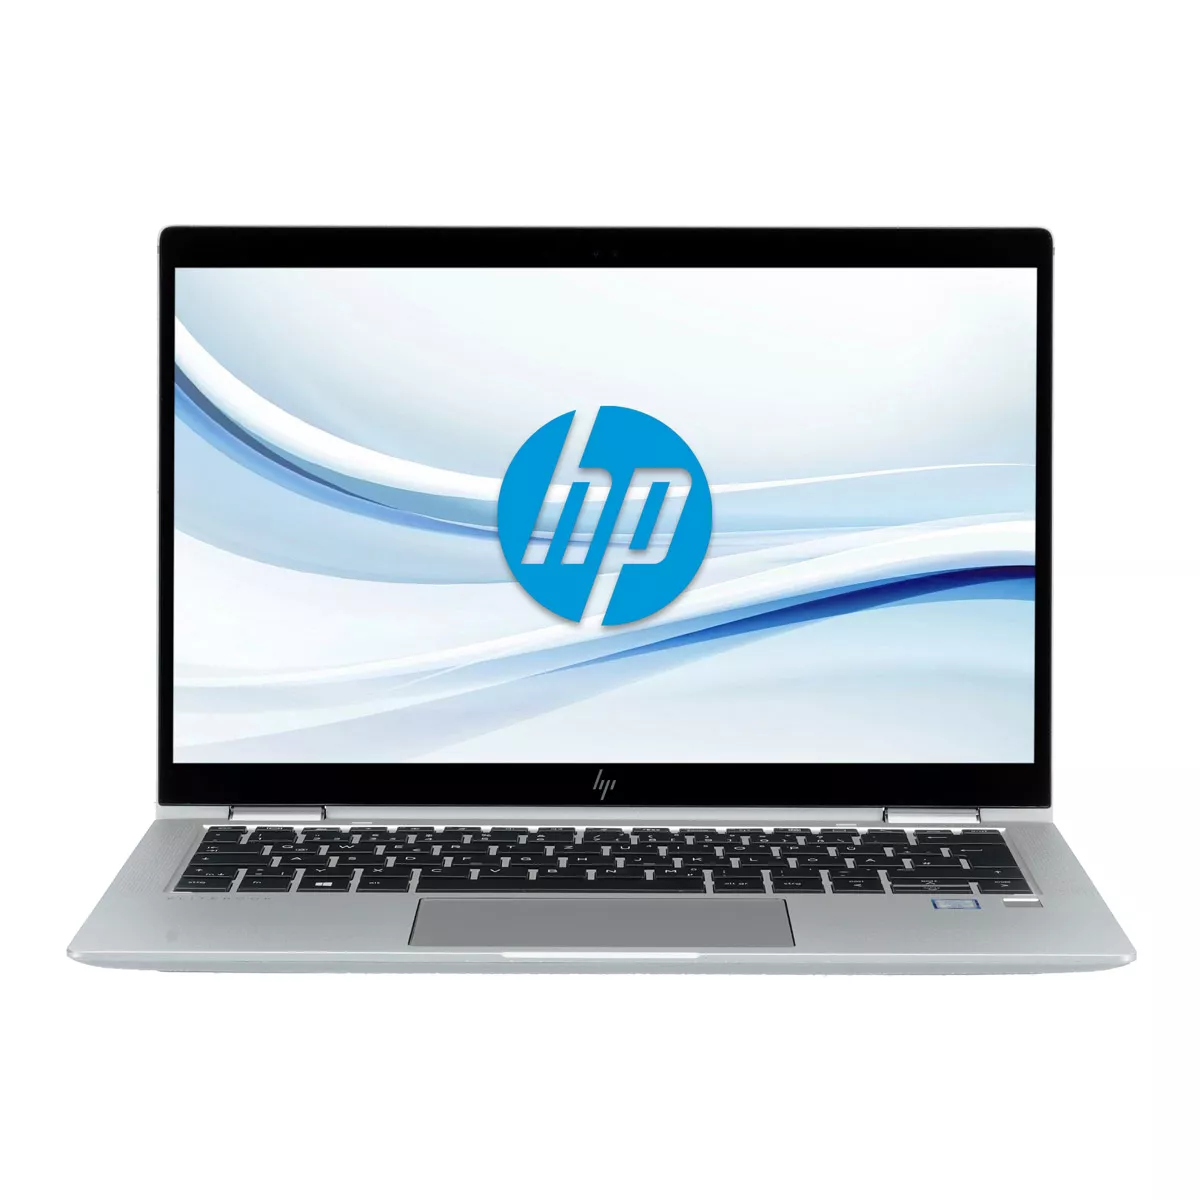 HP EliteBook x360 1030 G4 Core i7 8665U Full-HD Touch 16 GB 500 GB M.2 nVME SSD Webcam A+